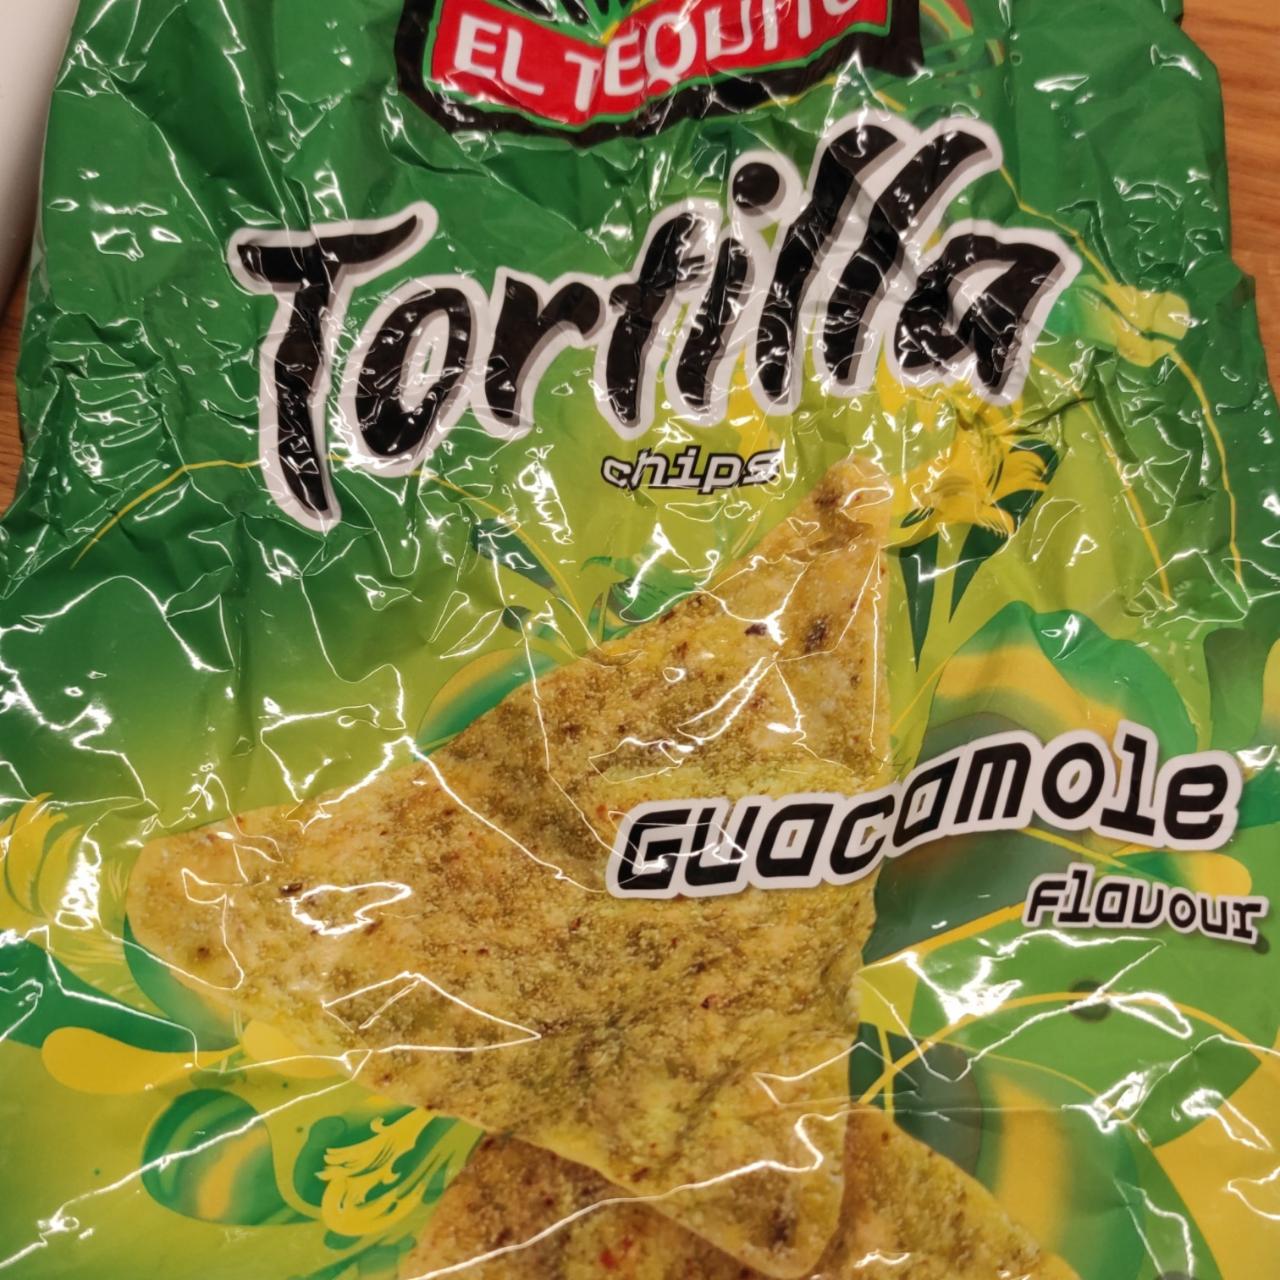 Fotografie - Tortilla chips guacamole El Tequito